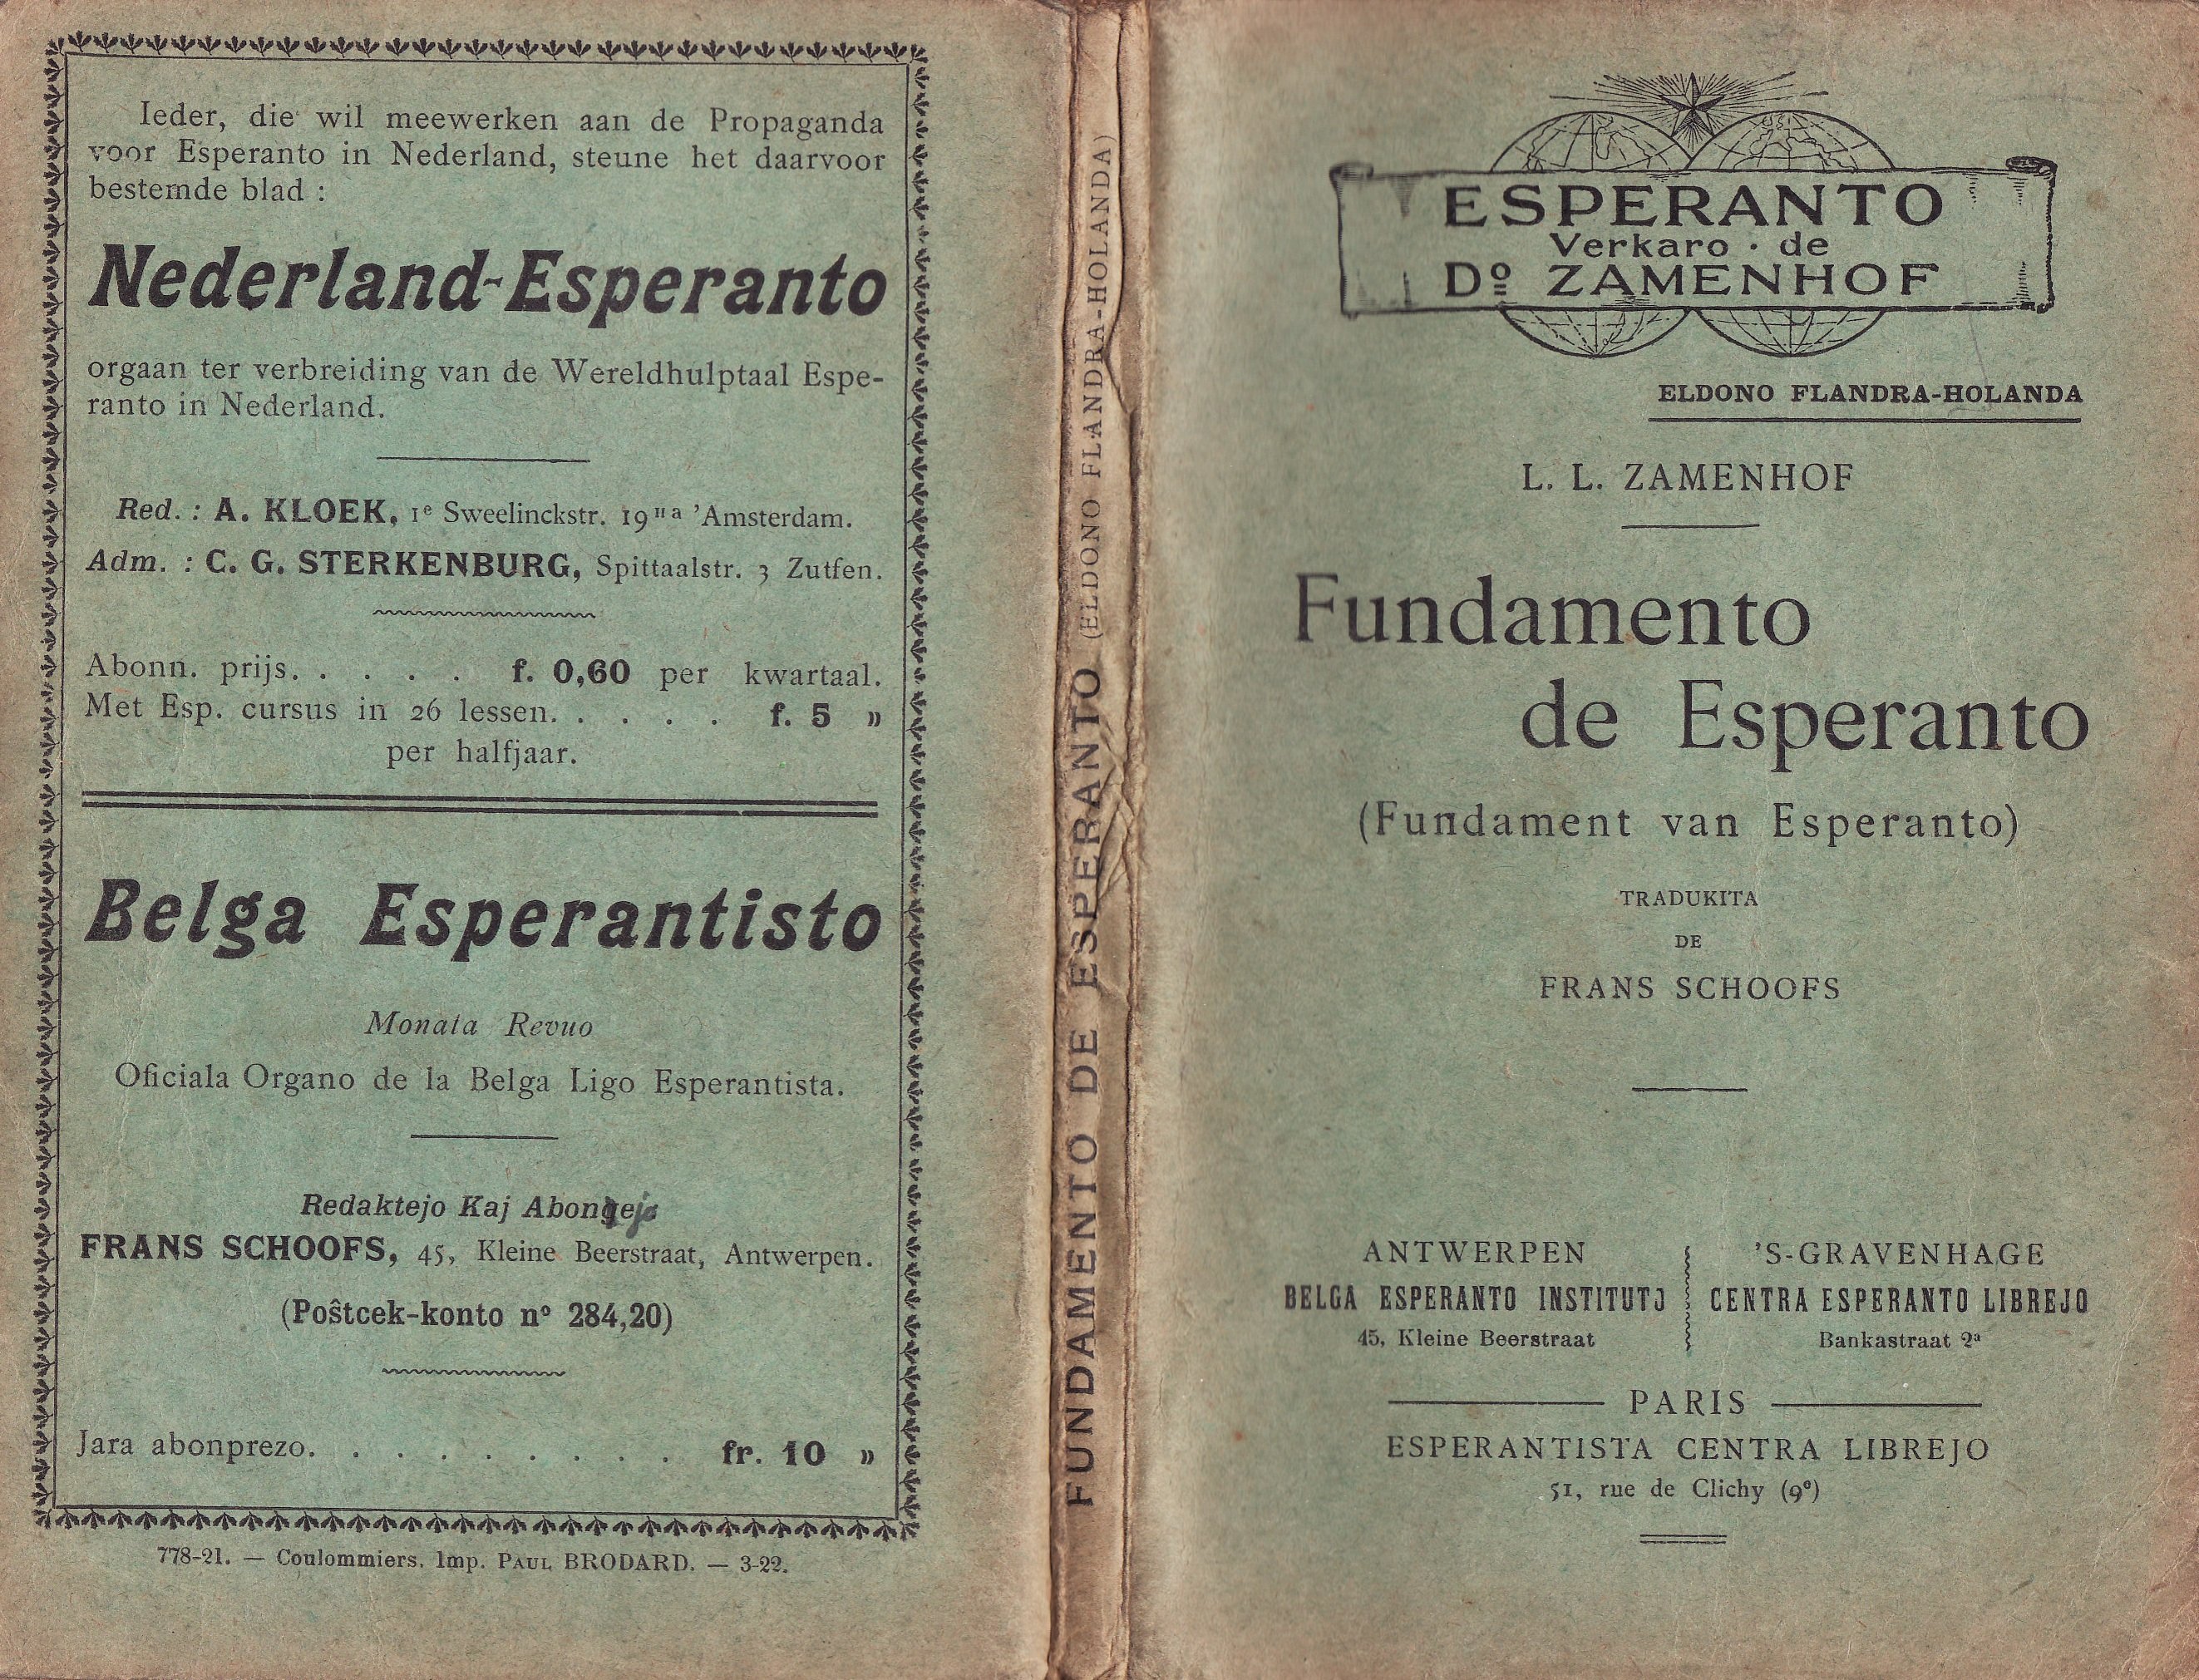 Pliaj informoj pri "La Fundamento de Esperanto"